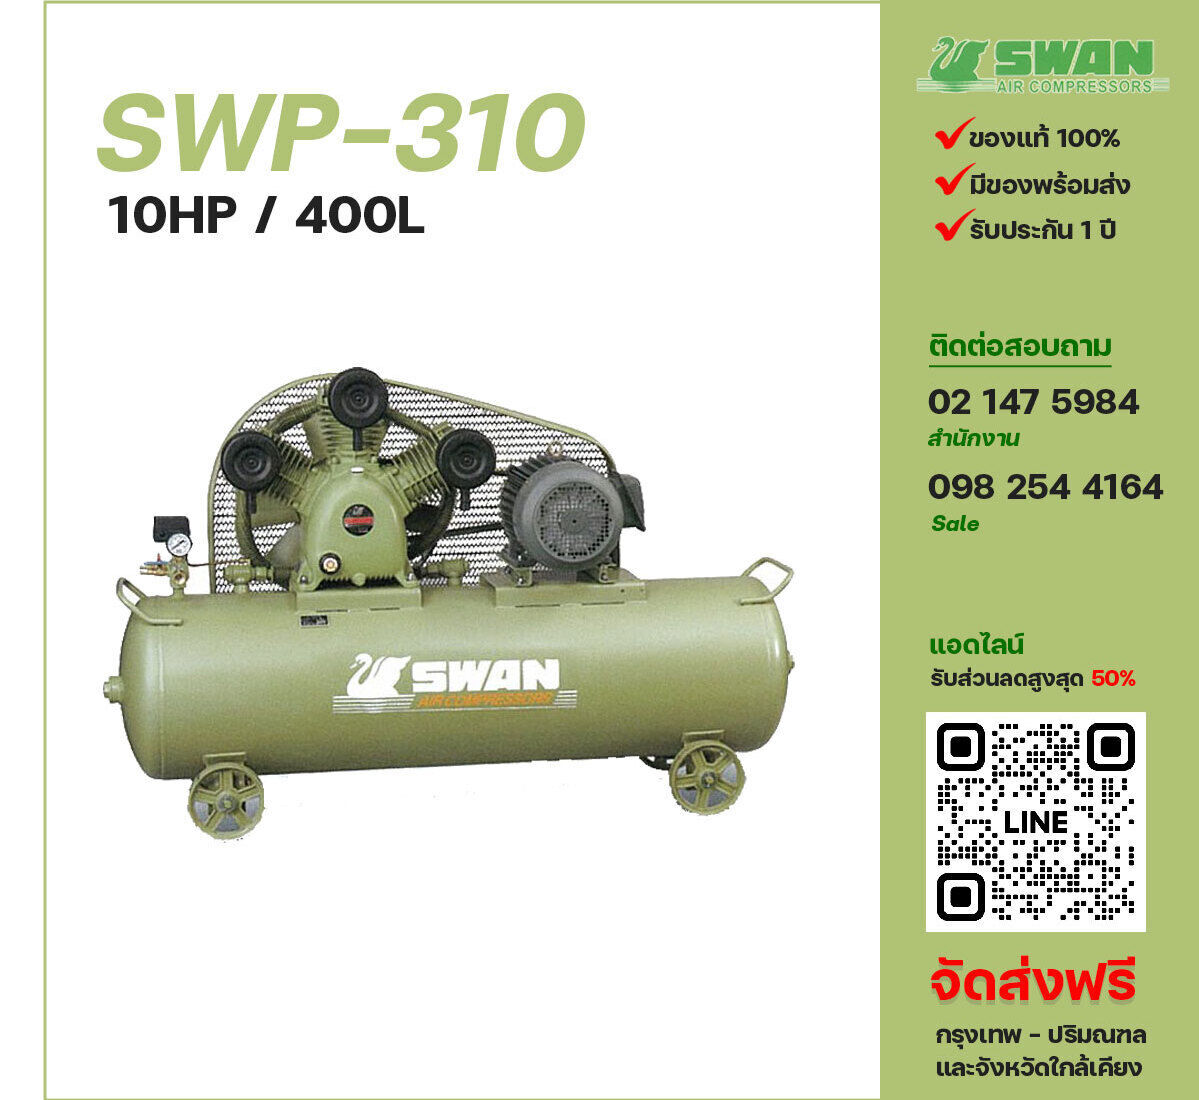 ปั๊มลมสวอน SWAN SWP-310 380V ปั๊มลมลูกสูบ ขนาด 3 สูบ 10 แรงม้า 400 ลิตร SWAN พร้อมมอเตอร์ ไฟ 380V ส่งฟรี กรุงเทพฯ-ปริมณฑล รับประกัน 1 ปี